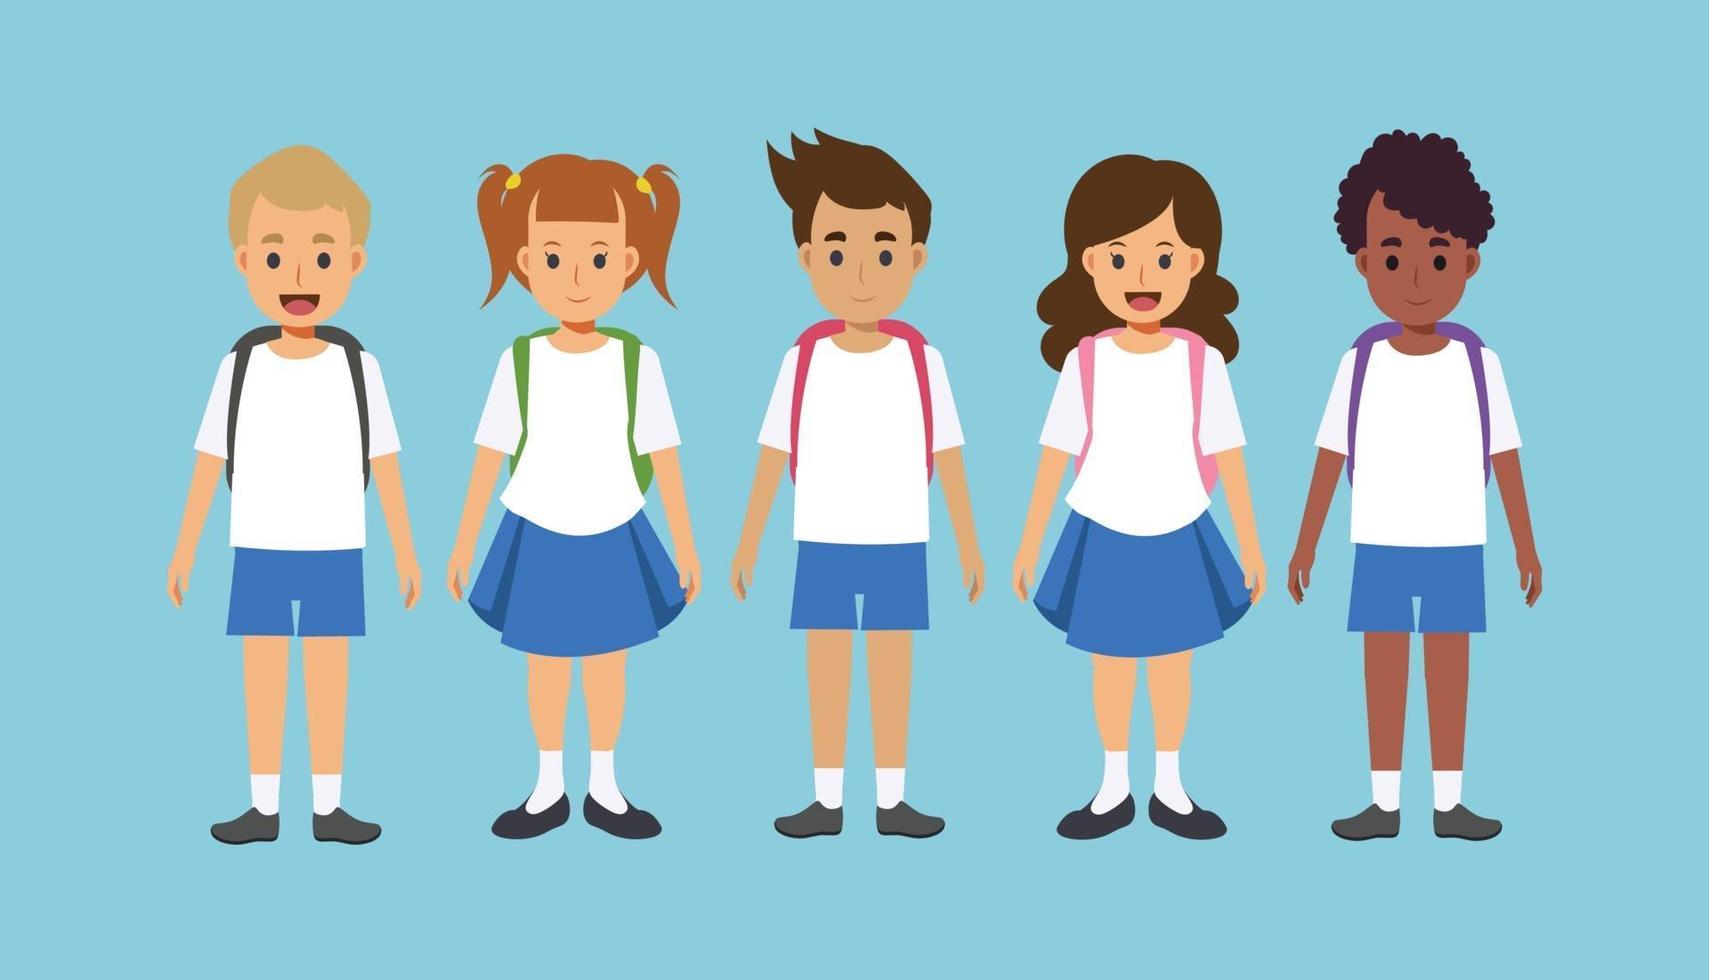 niños vestidos con uniforme escolar con mochilas. vector